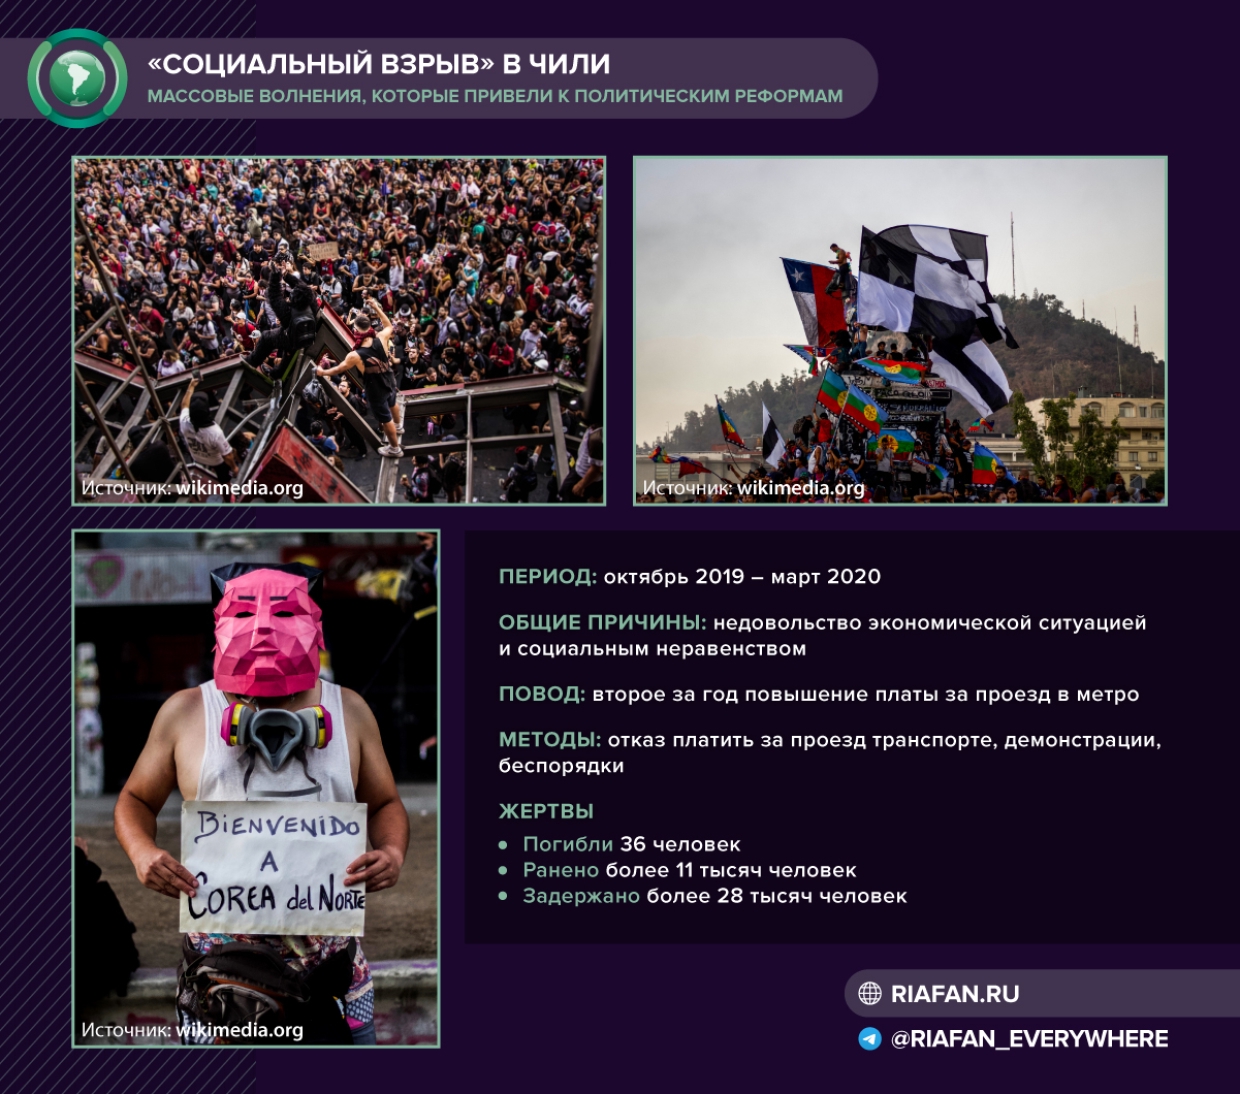 Предвыборная панорама в Чили: как «социальный взрыв» привел к доминированию левых сил